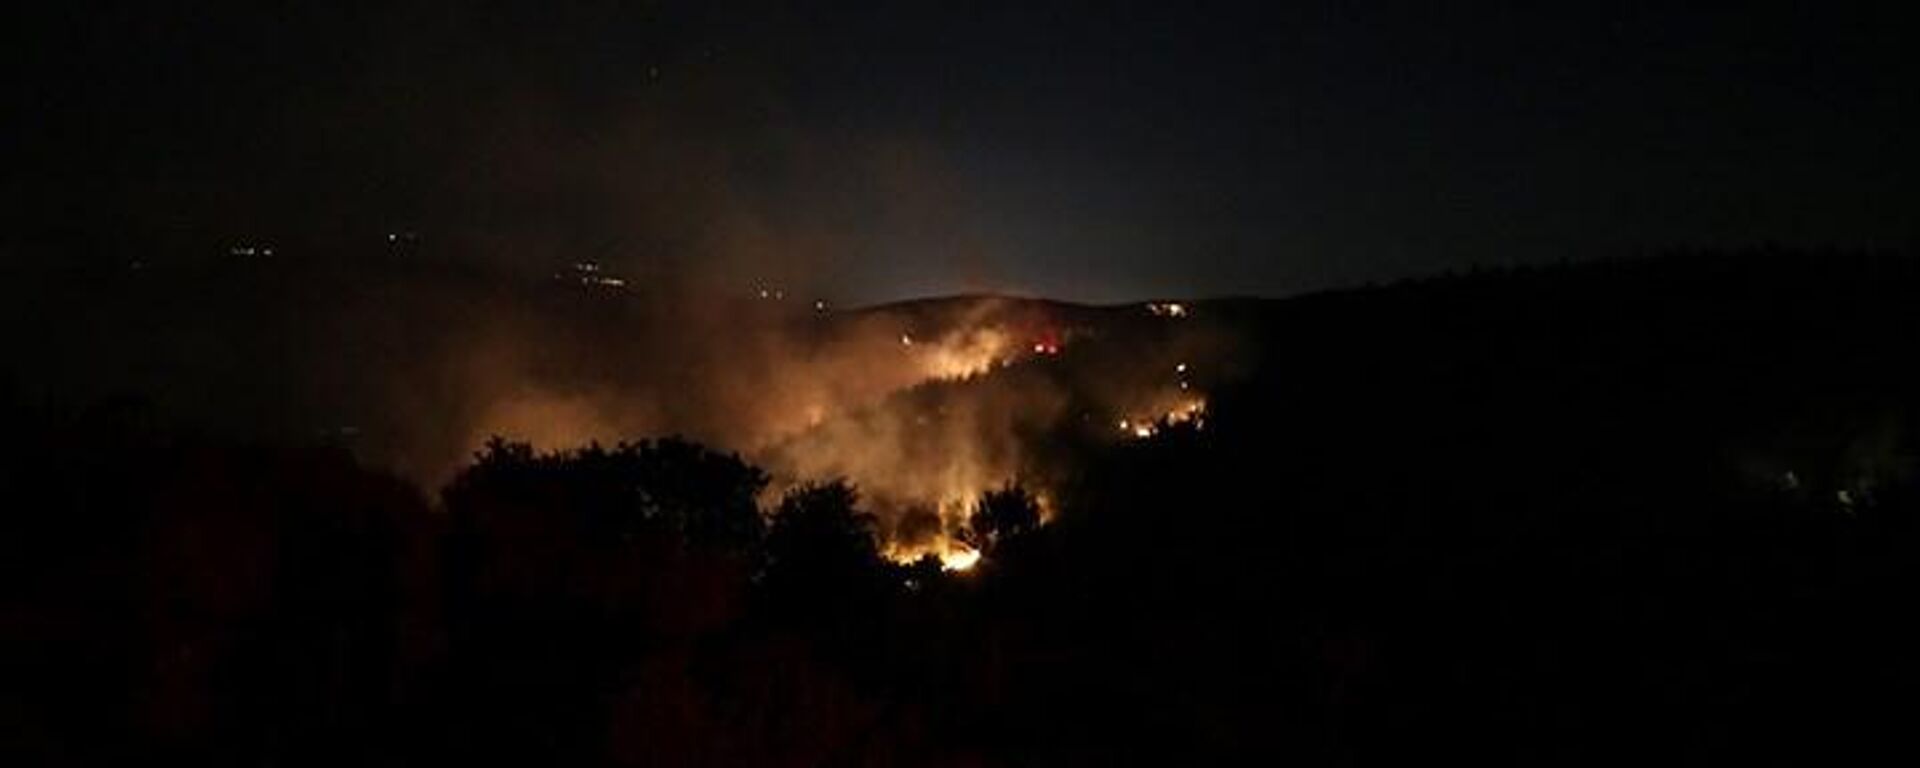 Balıkesir'in Susurluk ilçesindeki orman yangınında hasar oluştu. Yangının kontrol altına alındığı bildirildi. - Sputnik Türkiye, 1920, 05.08.2022